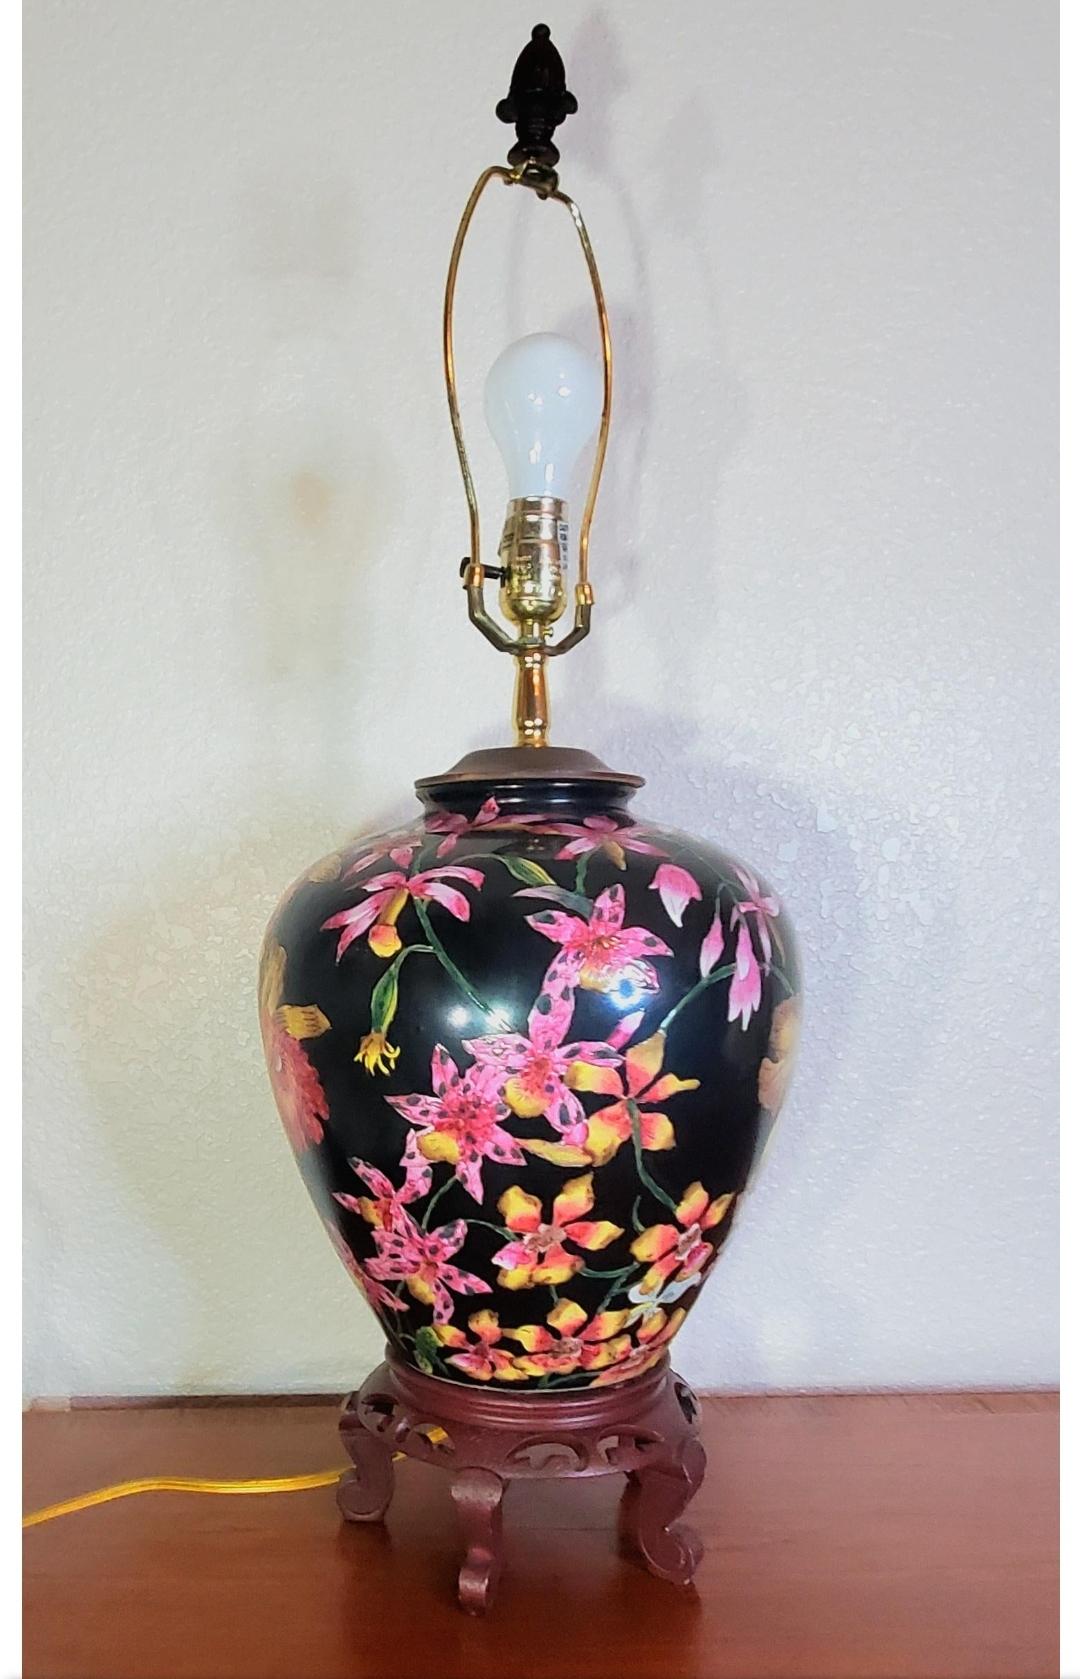 Atemberaubende chinesische Hollywood-Regency-Lampe aus einem Ingwerkrug.
Detaillierte, komplizierte Vase mit Schwertlilien und Kirschblüten.
Ständer aus geschnitztem Holz.

Dem polarisierten Kabel nach zu urteilen, wurde die Ingwer-Vase in den 60er